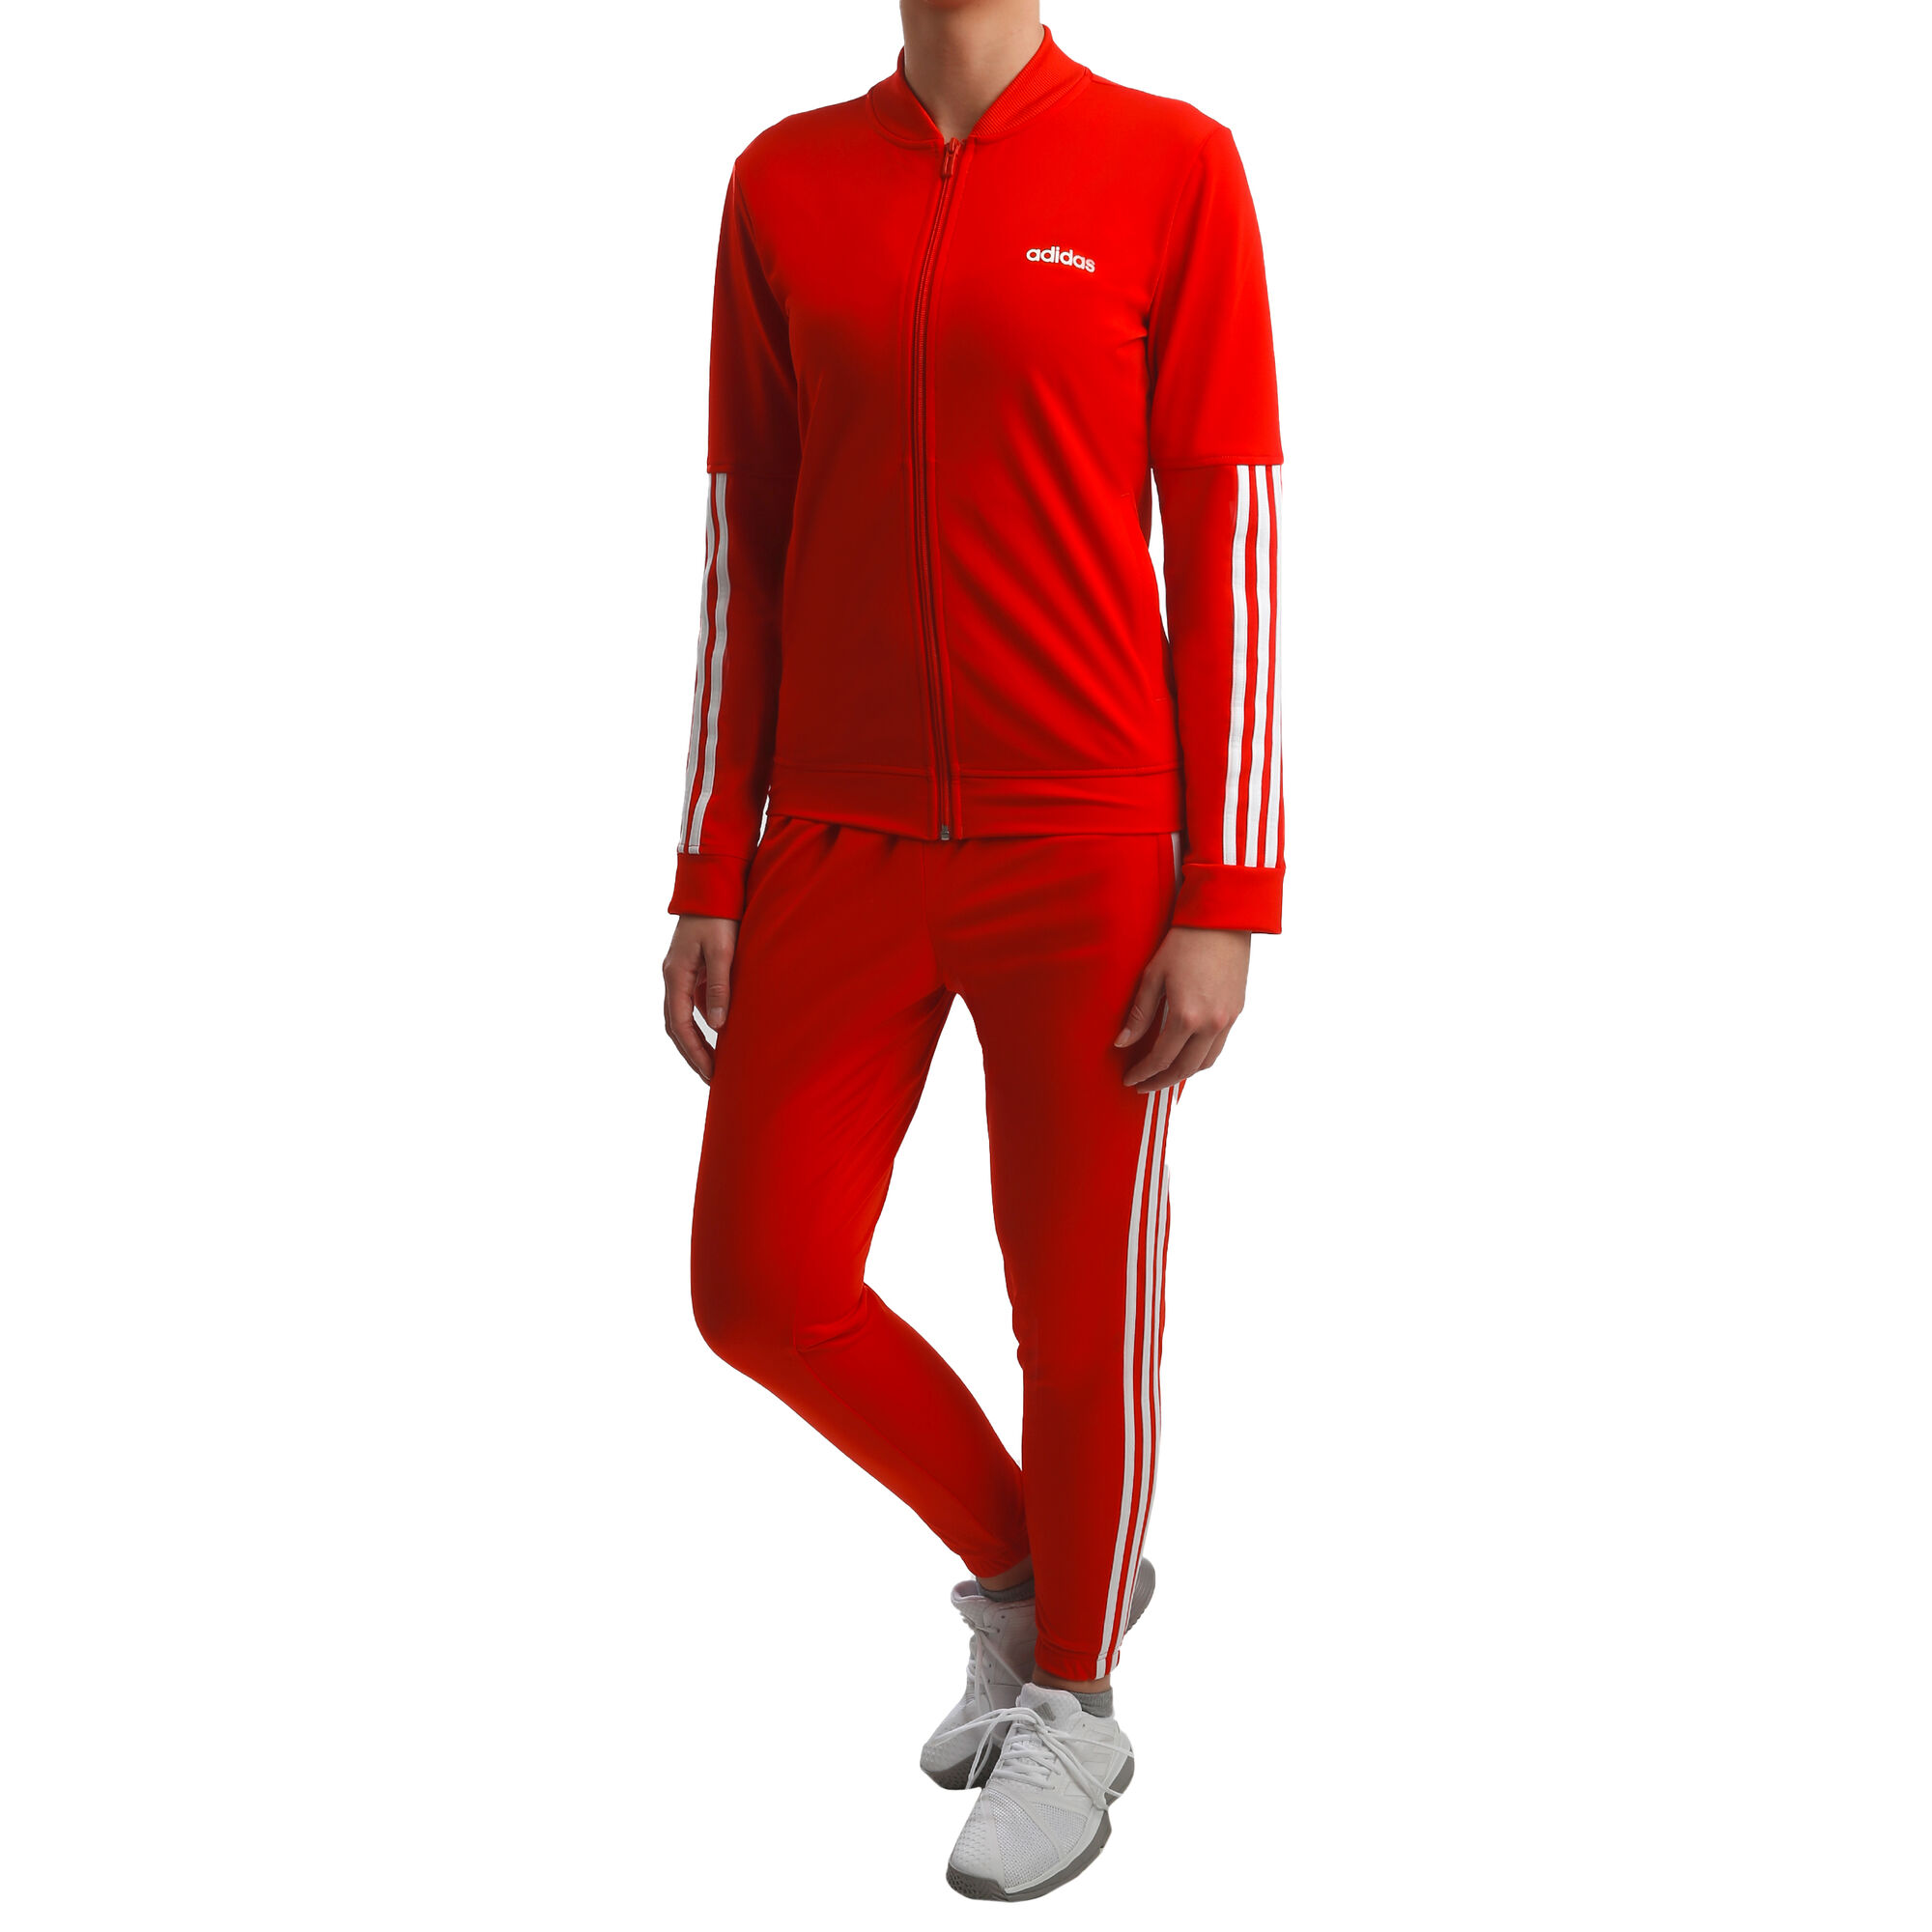 ik ben gelukkig Voorbijganger Arthur Conan Doyle adidas Back2Basic 3 Stripes Trainingsanzug Damen - Rot, Weiß online kaufen  | Tennis-Peters